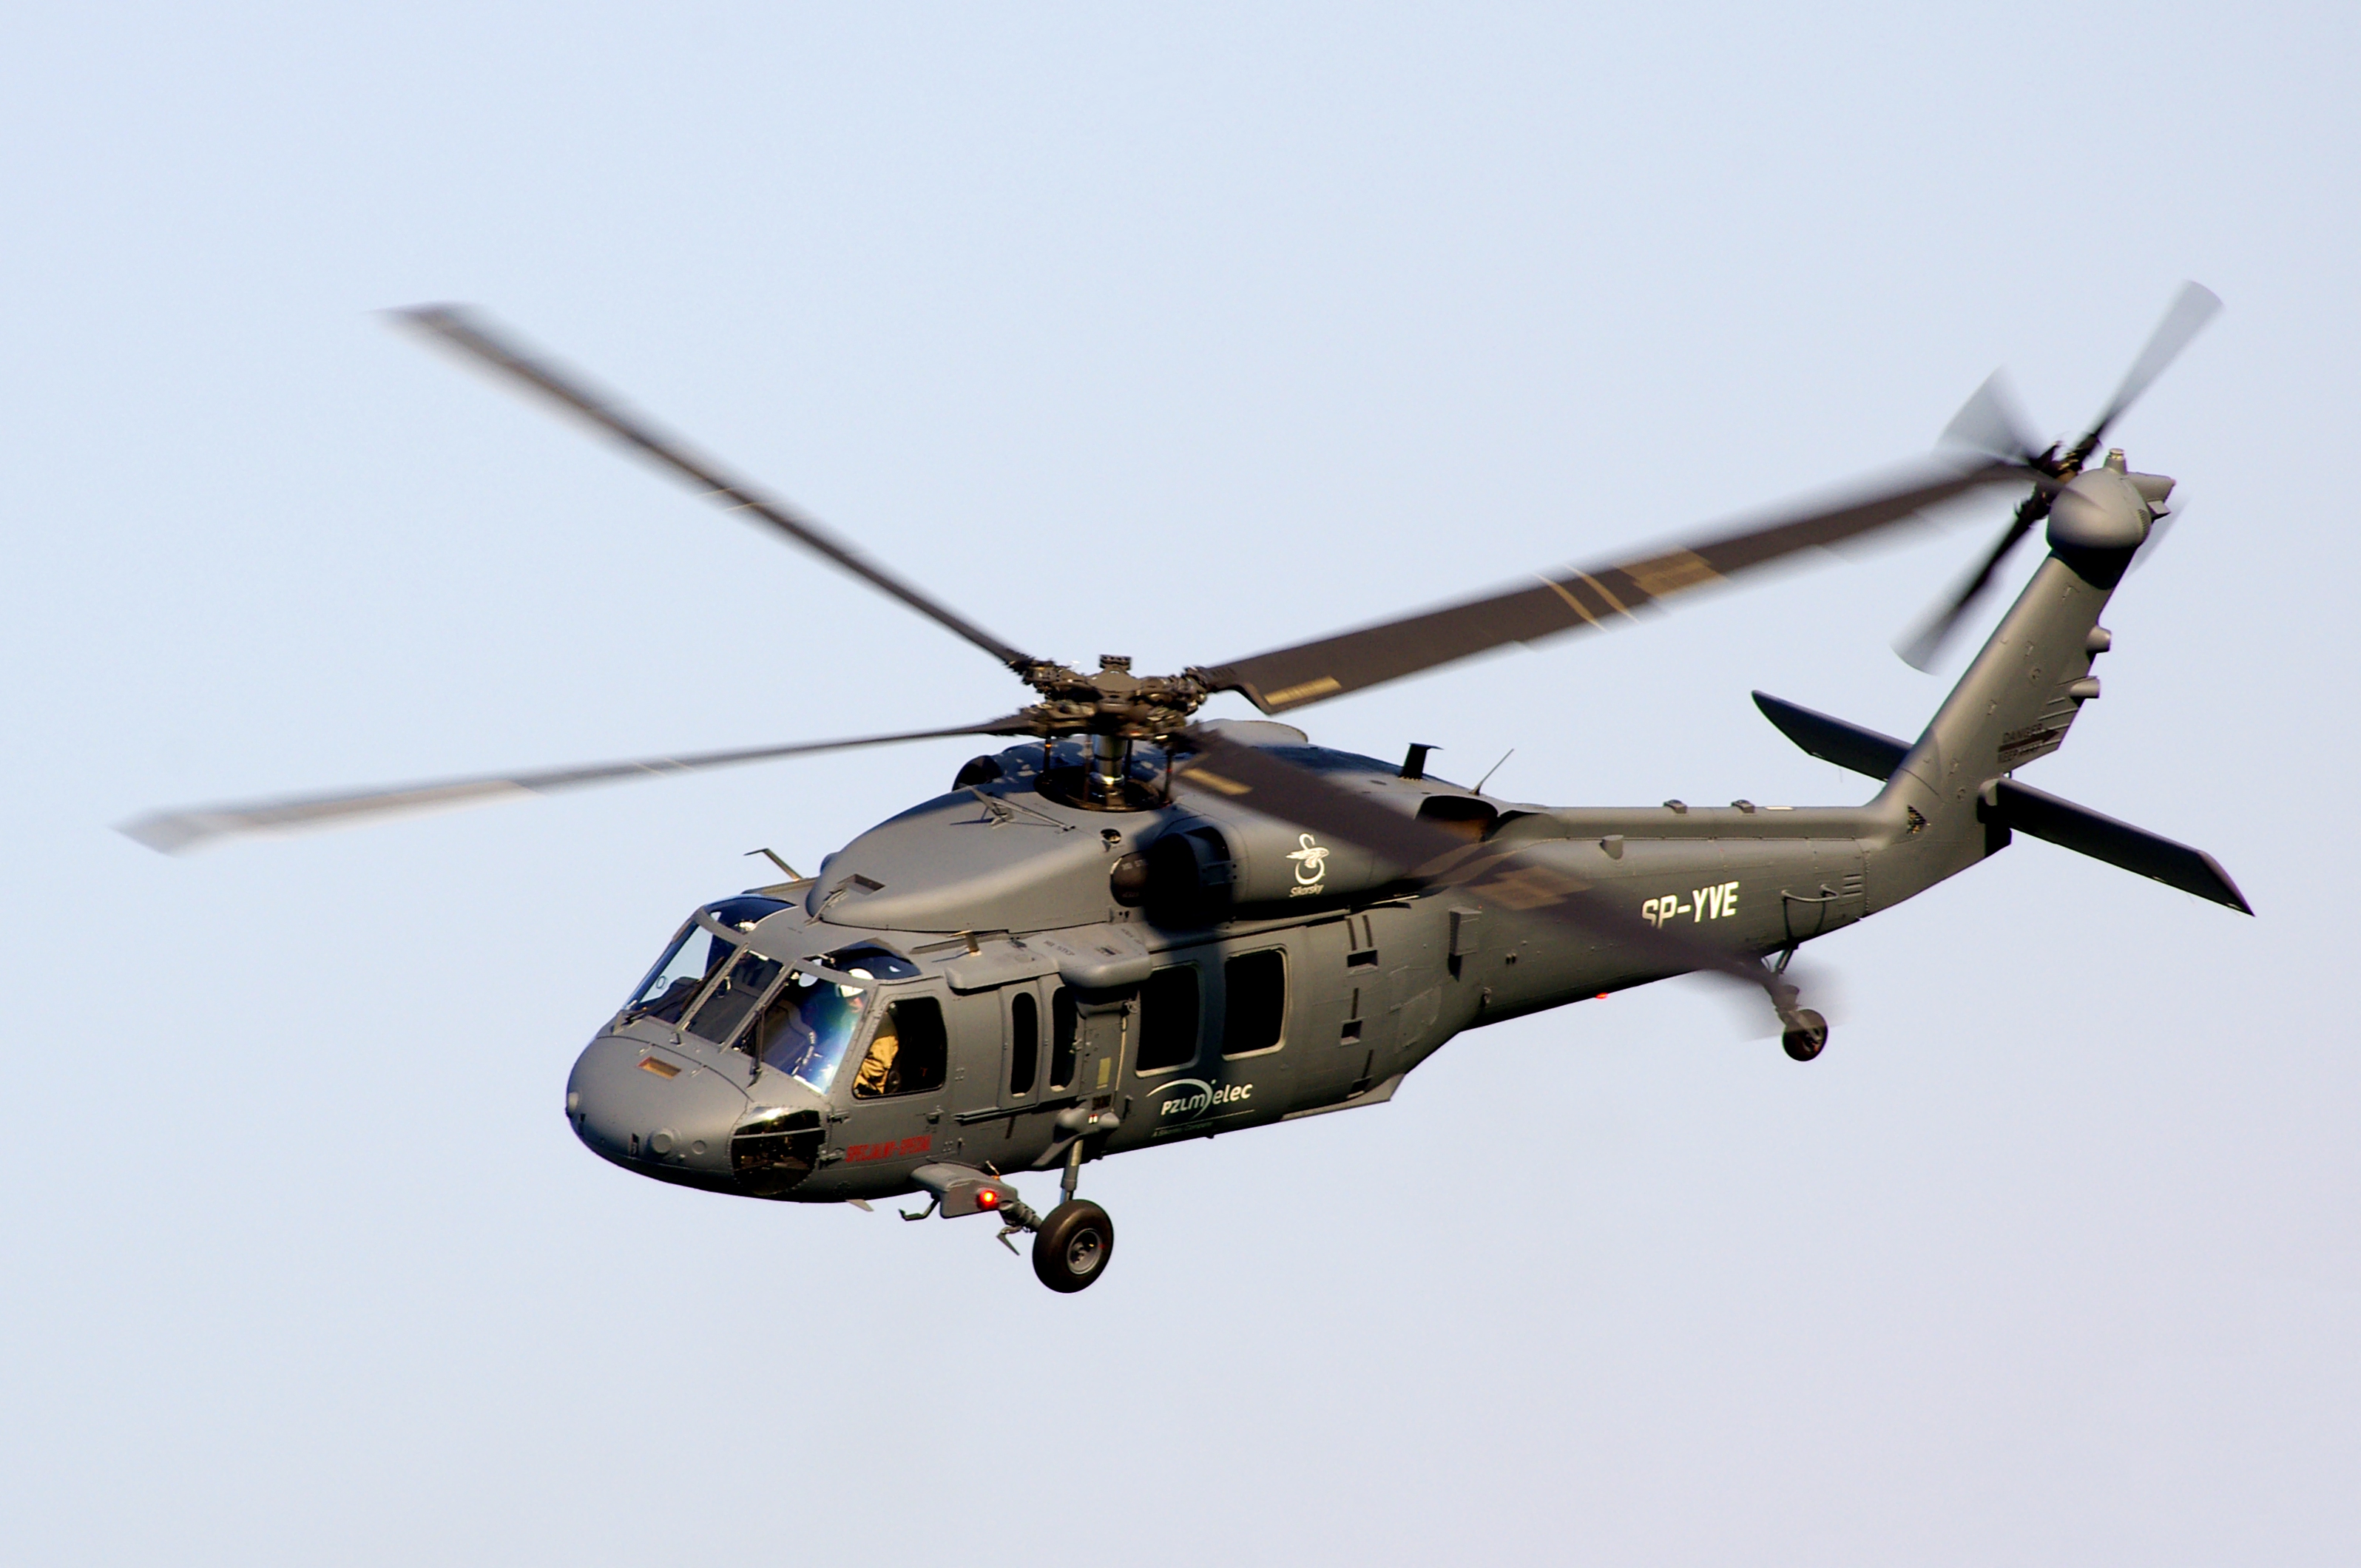 Czescy wolontariusze chcą kupić amerykański śmigłowiec UH-60 Black Hawk dla ukraińskich sił zbrojnych